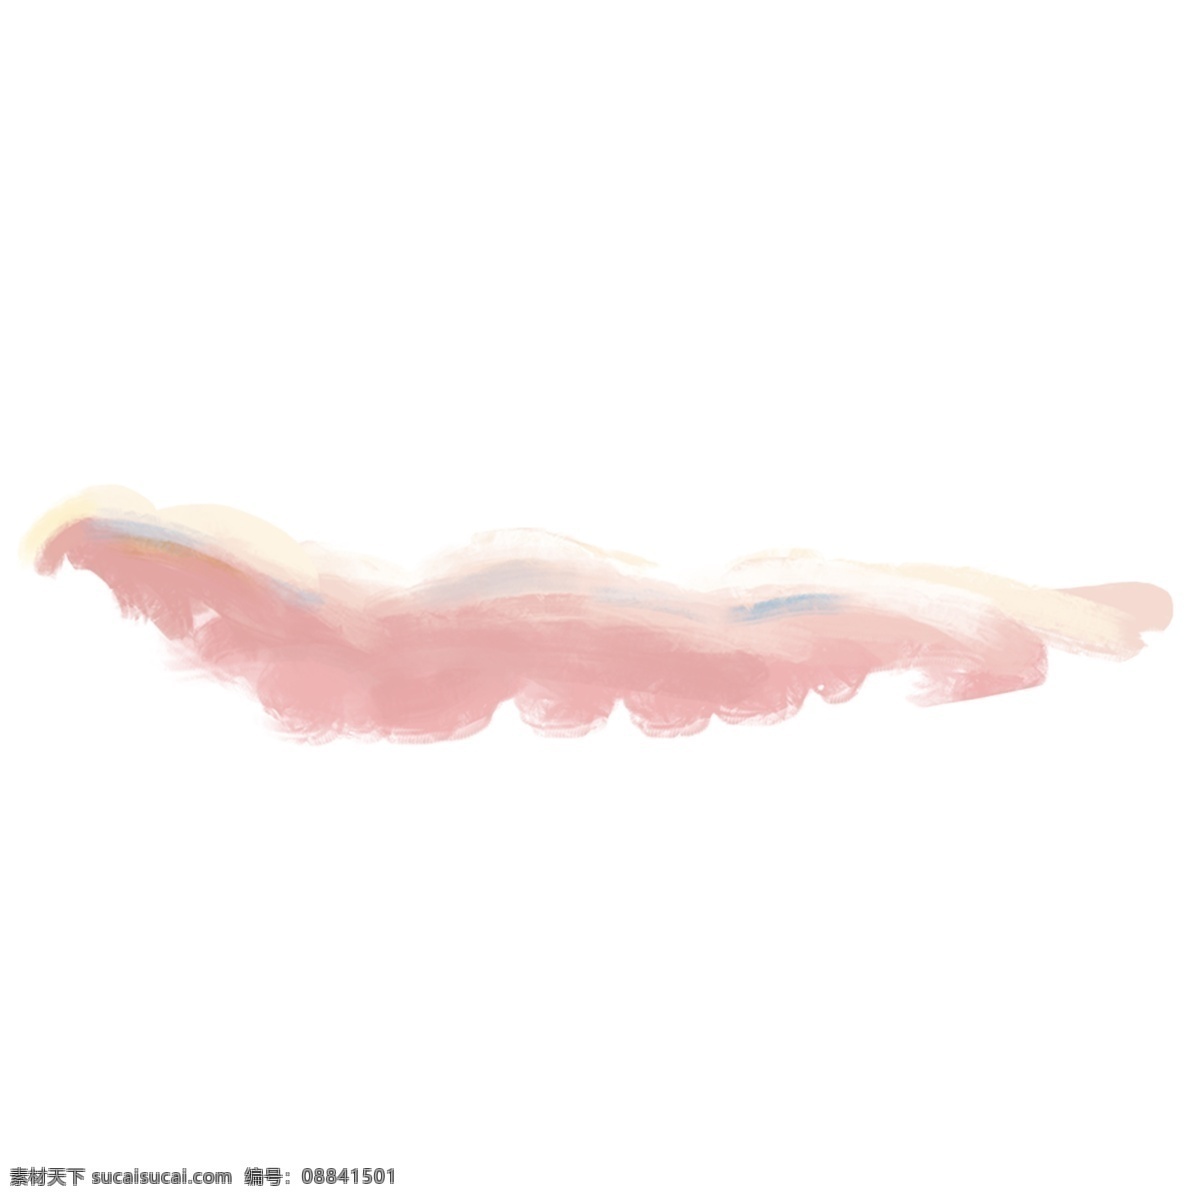 粉色 手绘 云朵 水彩 装饰素材